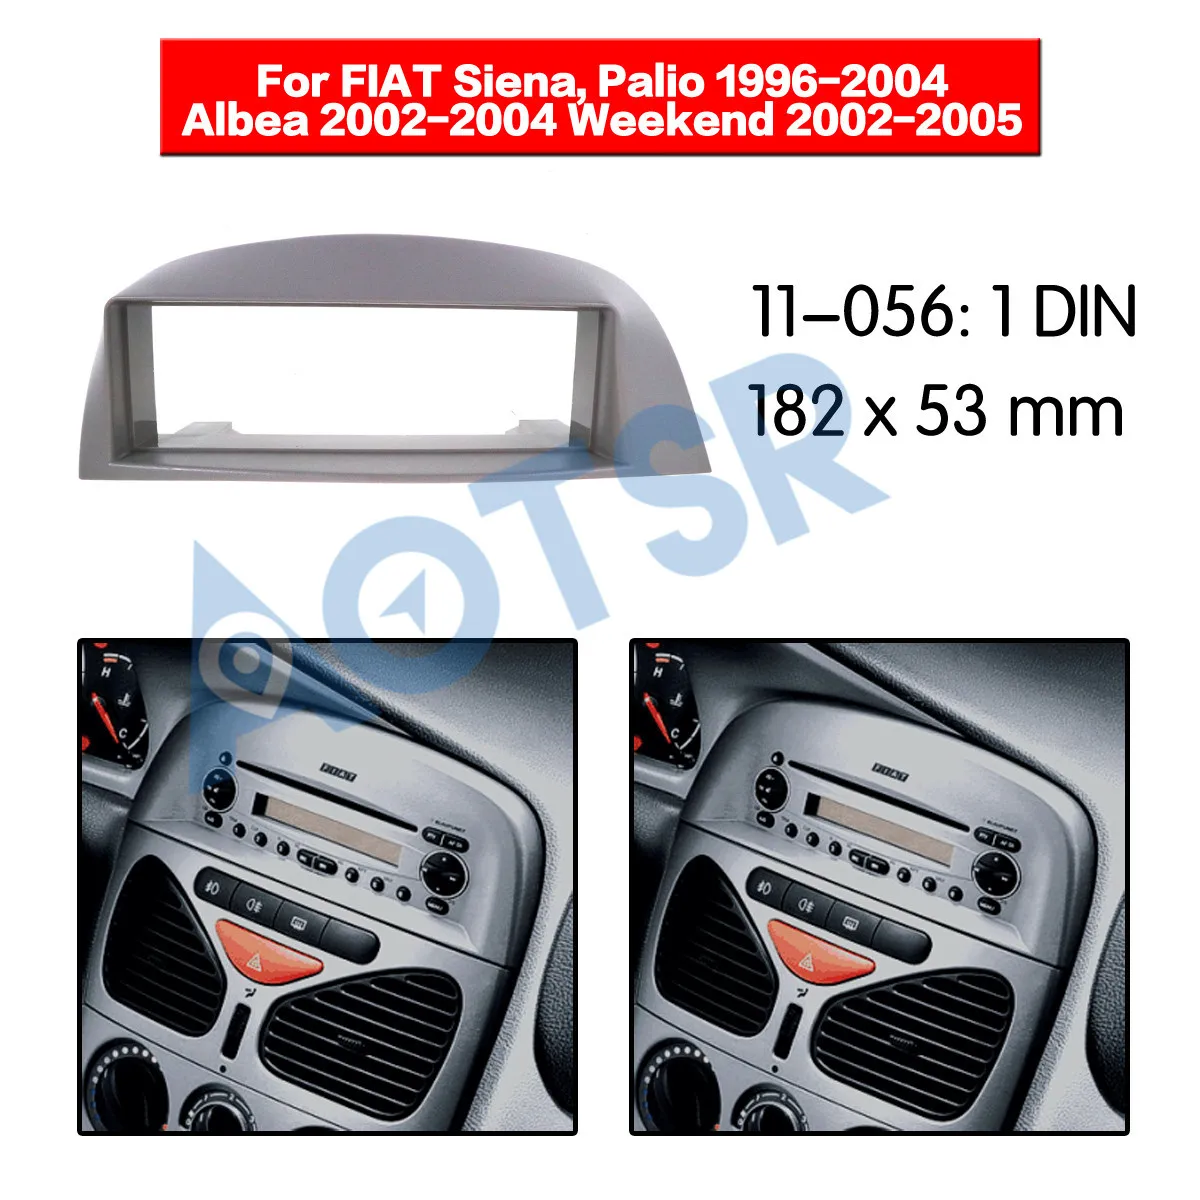 Рамка для автомобильного радио FIAT Siena Palio 1996-2004 Albea 2002-2004 выходной 2002-2005 адаптер